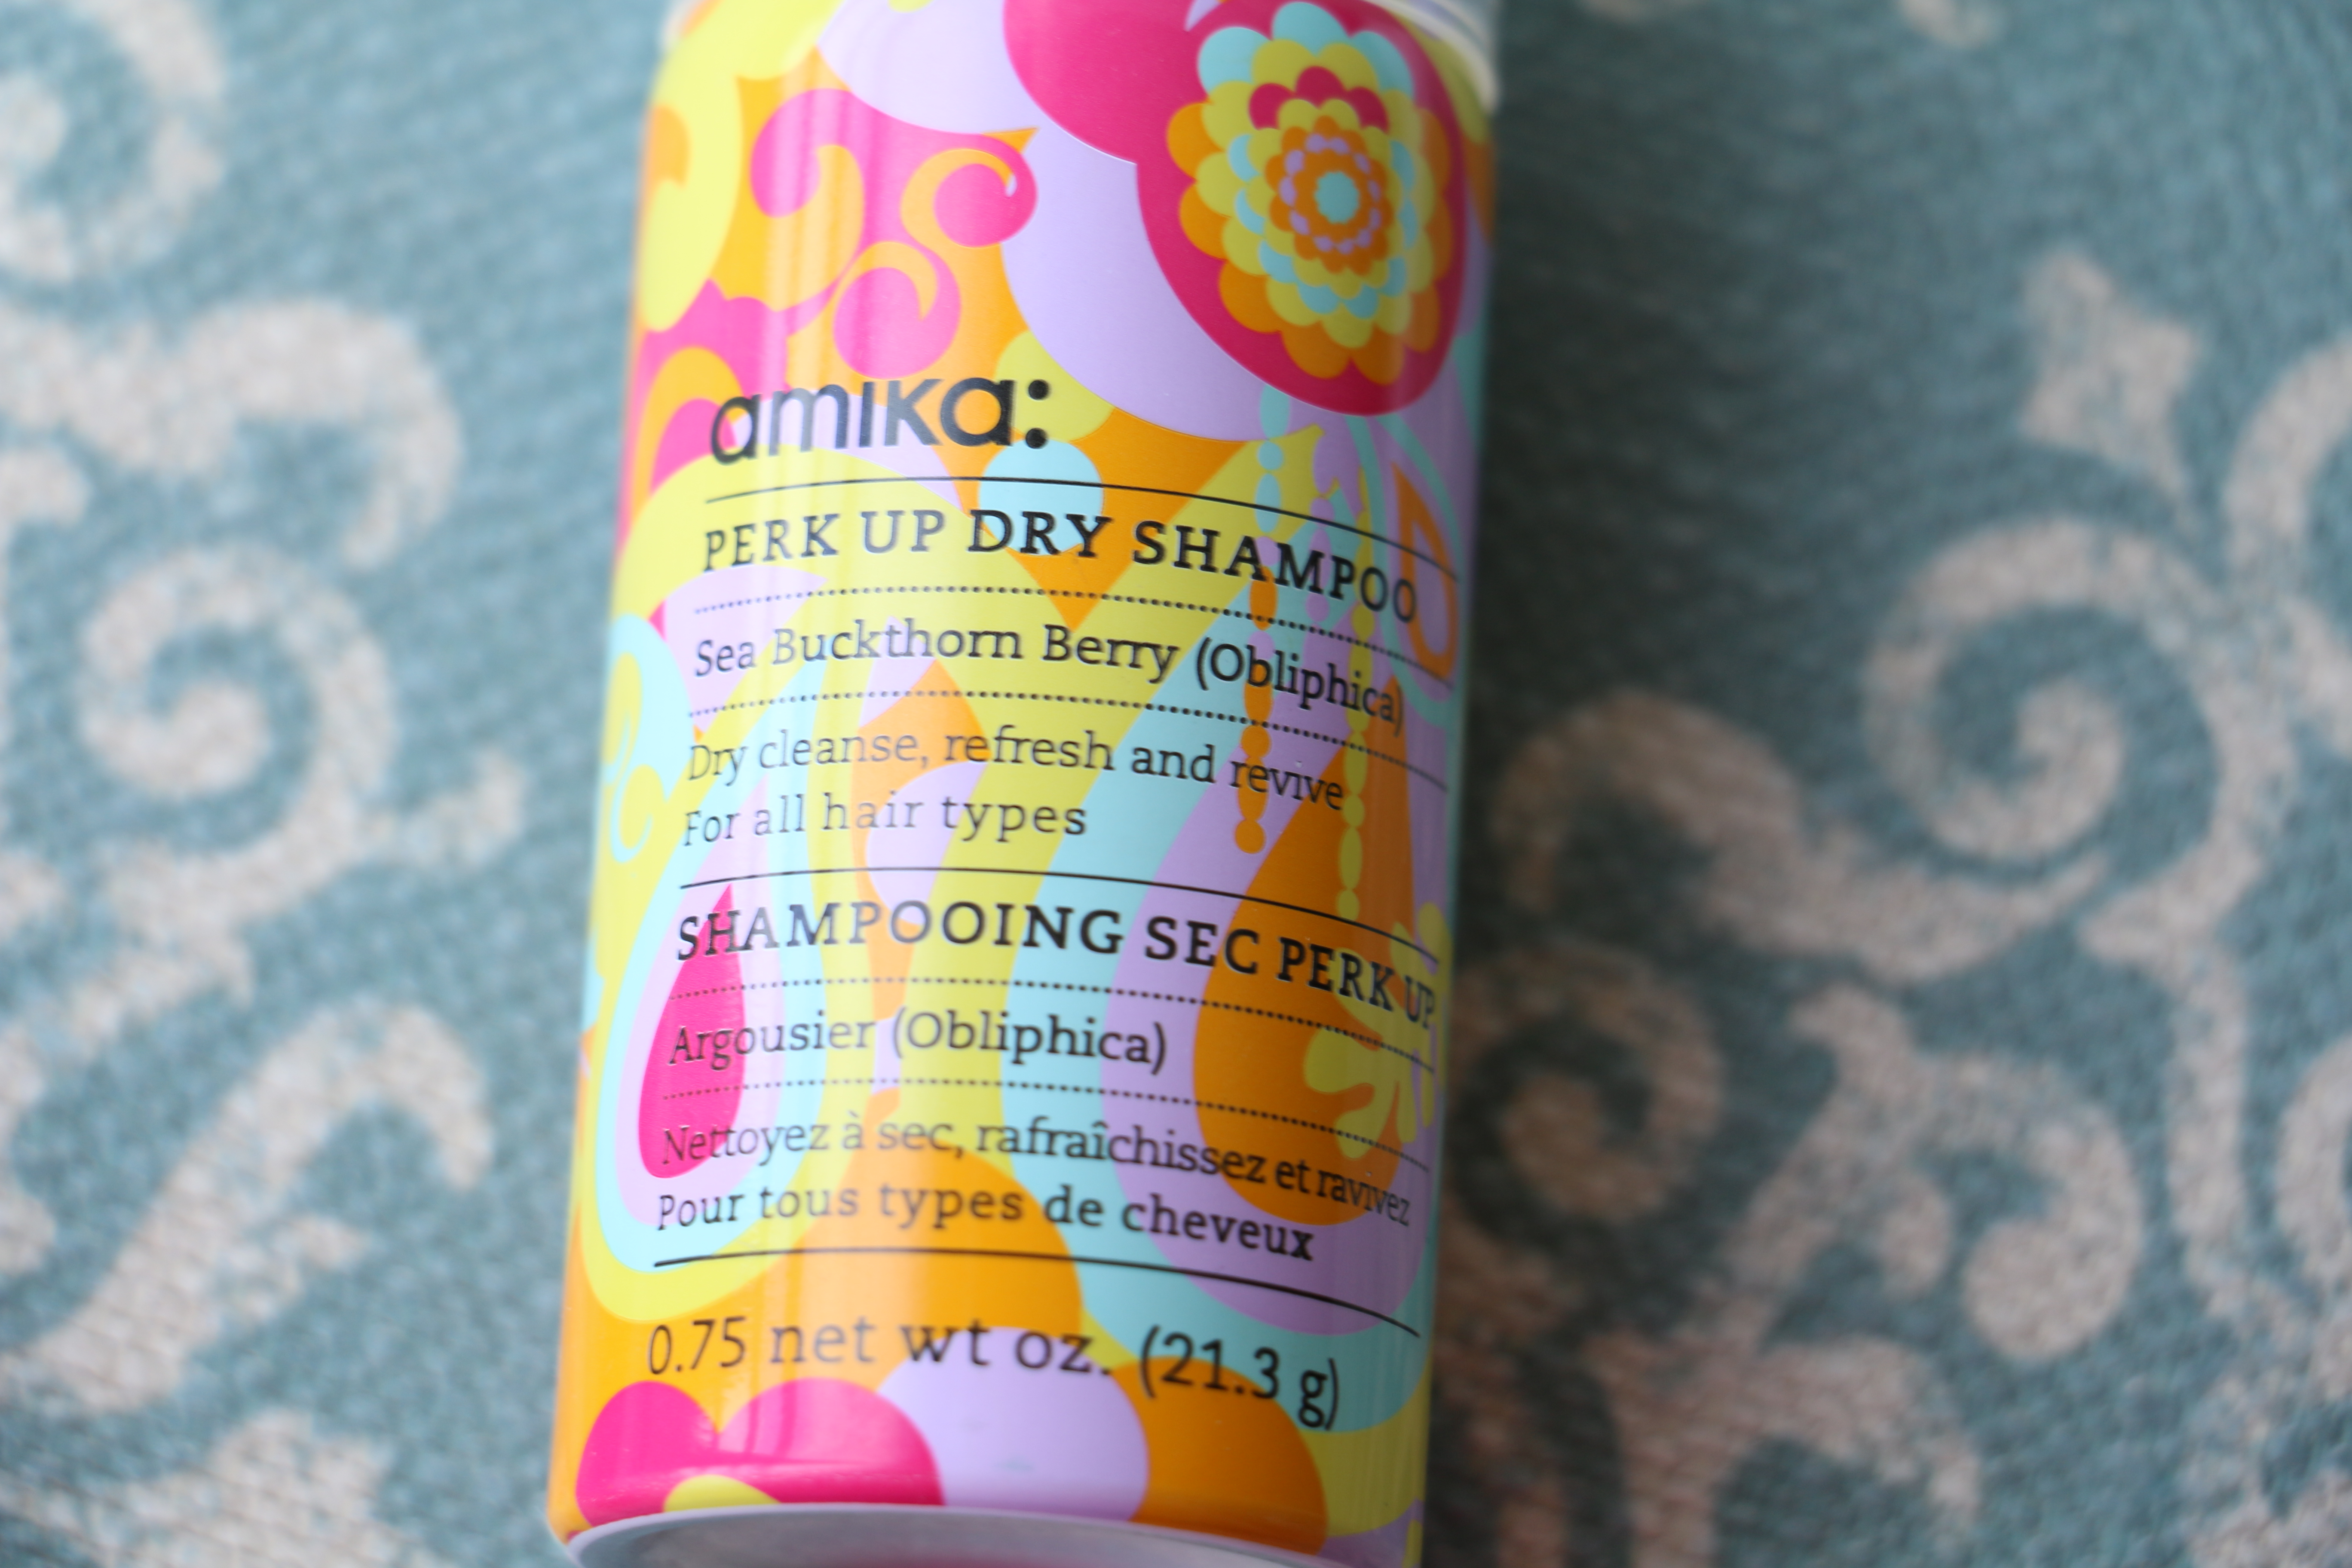 amika Perk Up Dry Shampoo